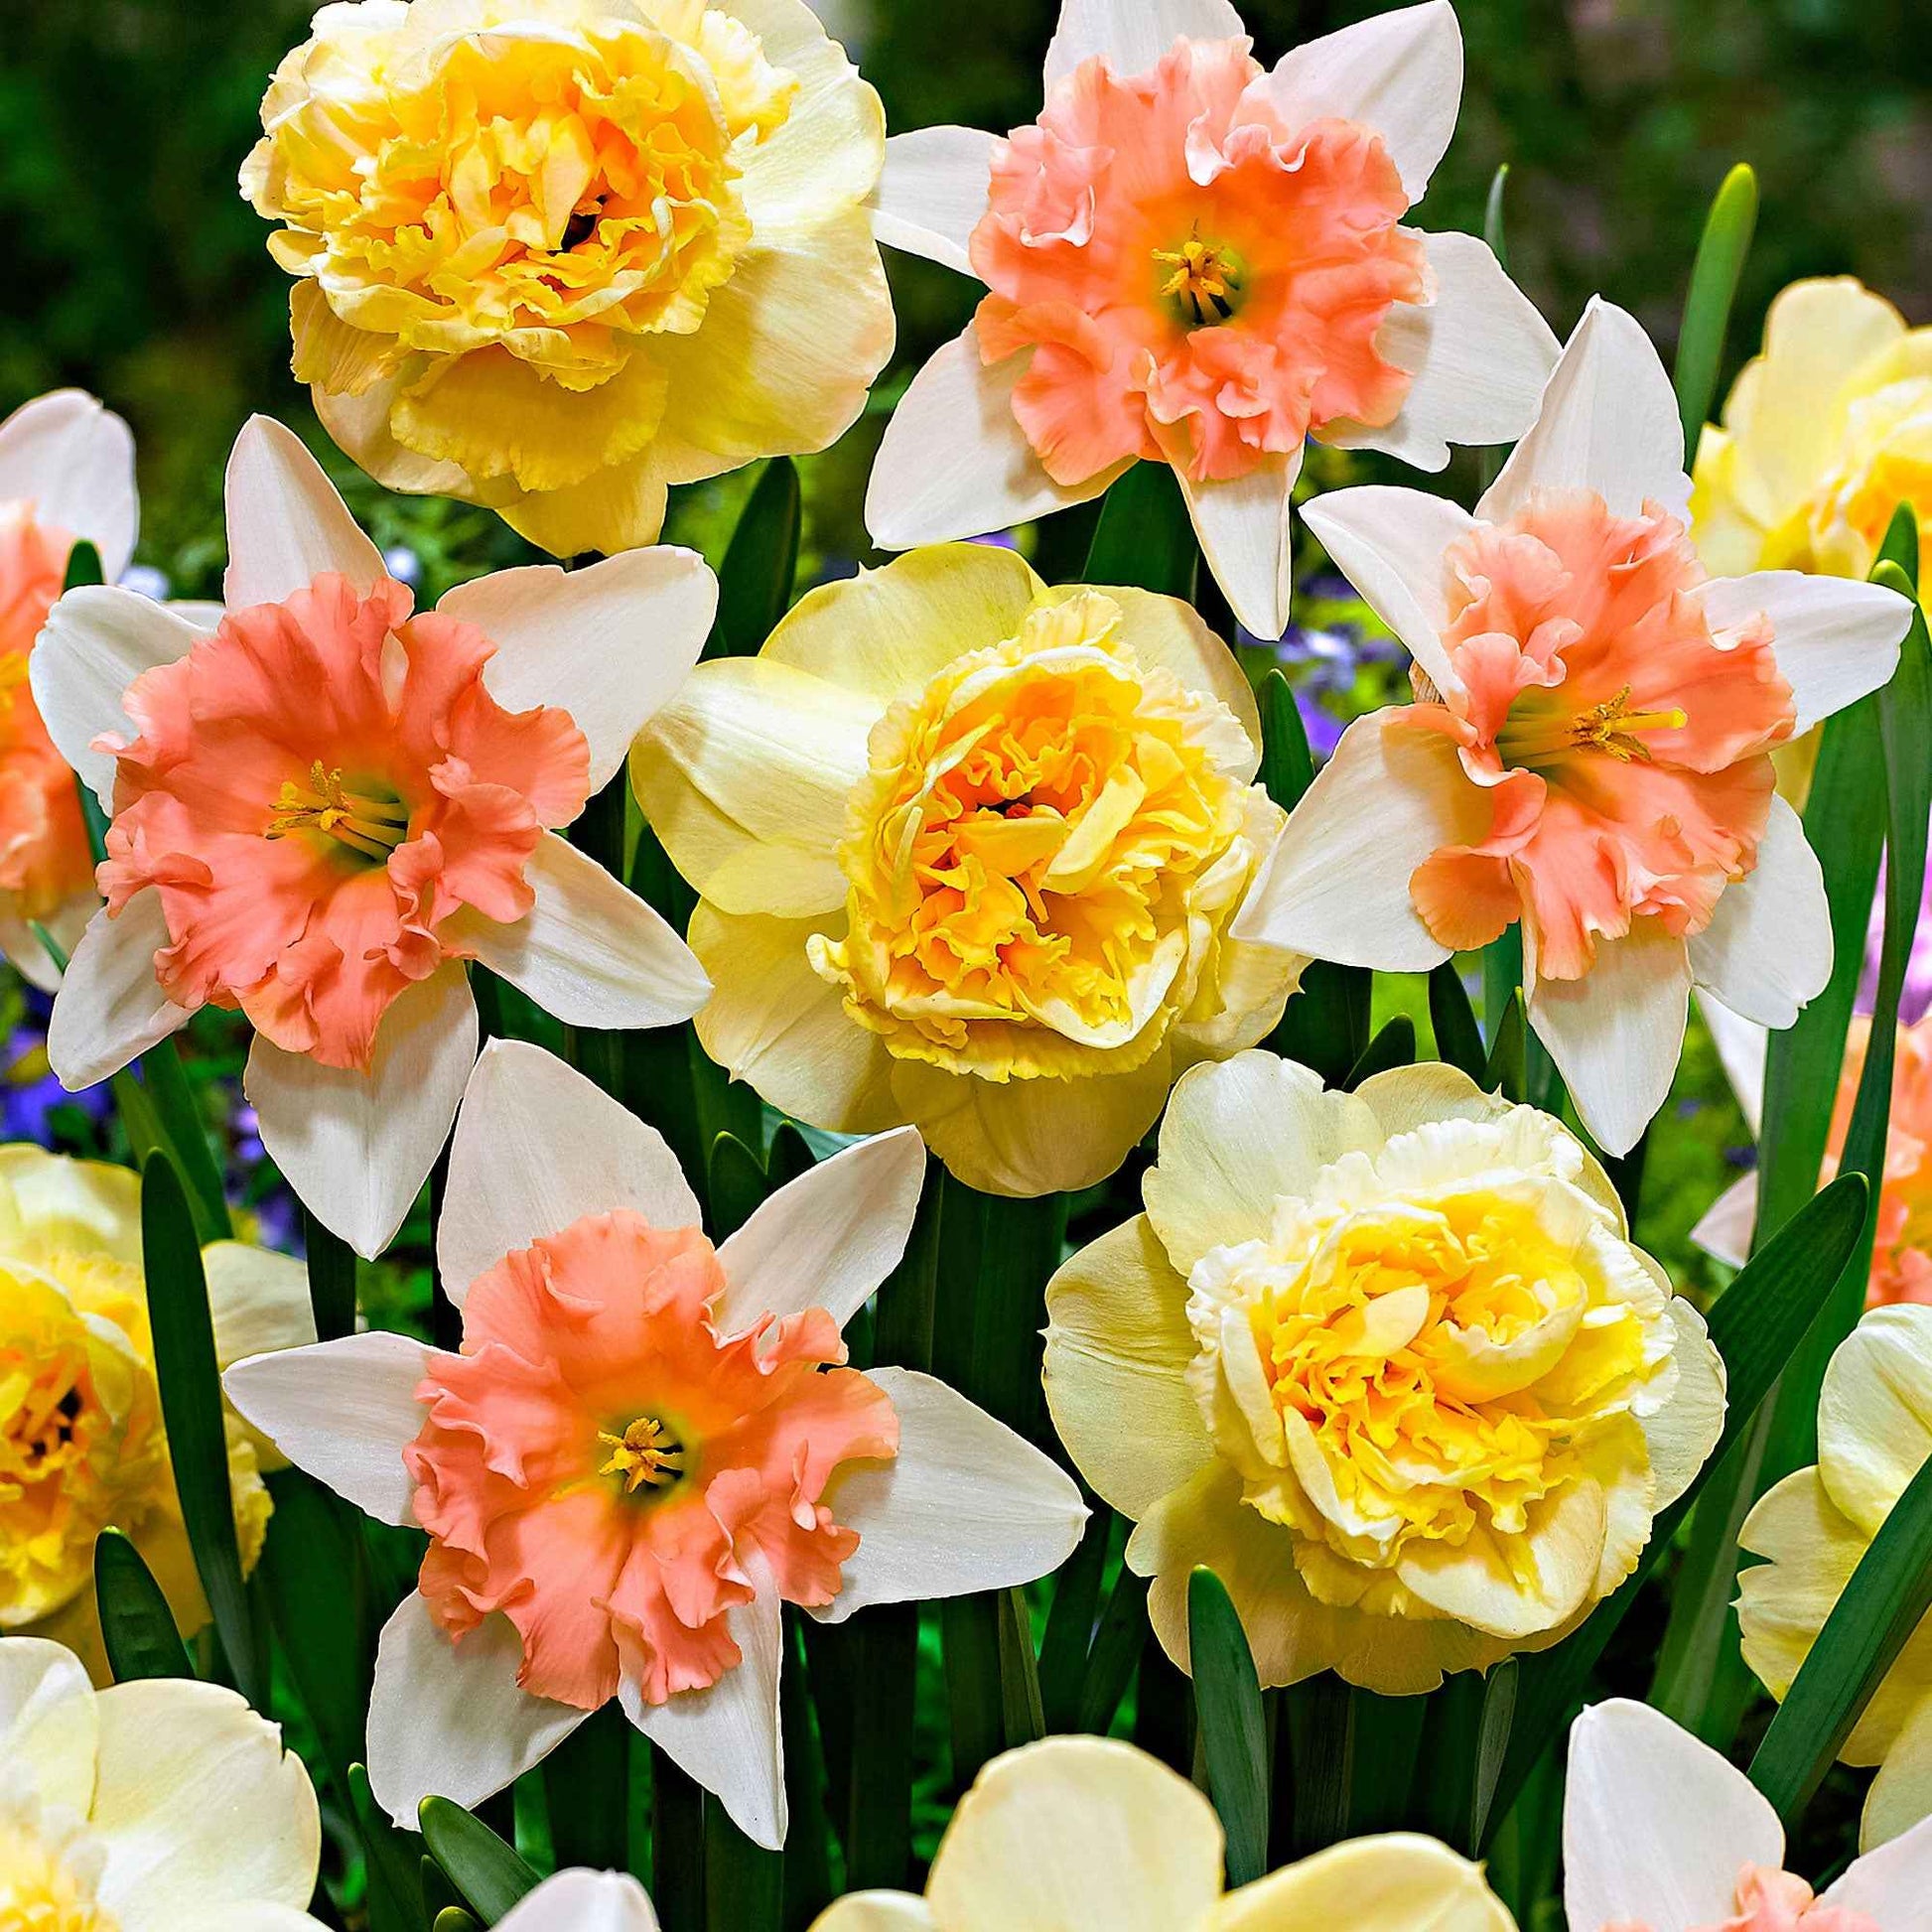 7x Narcisses Narcissus - Mélange ’Art Design’ + ’Dear Love’ jaune-rose - Bulbes de fleurs populaires